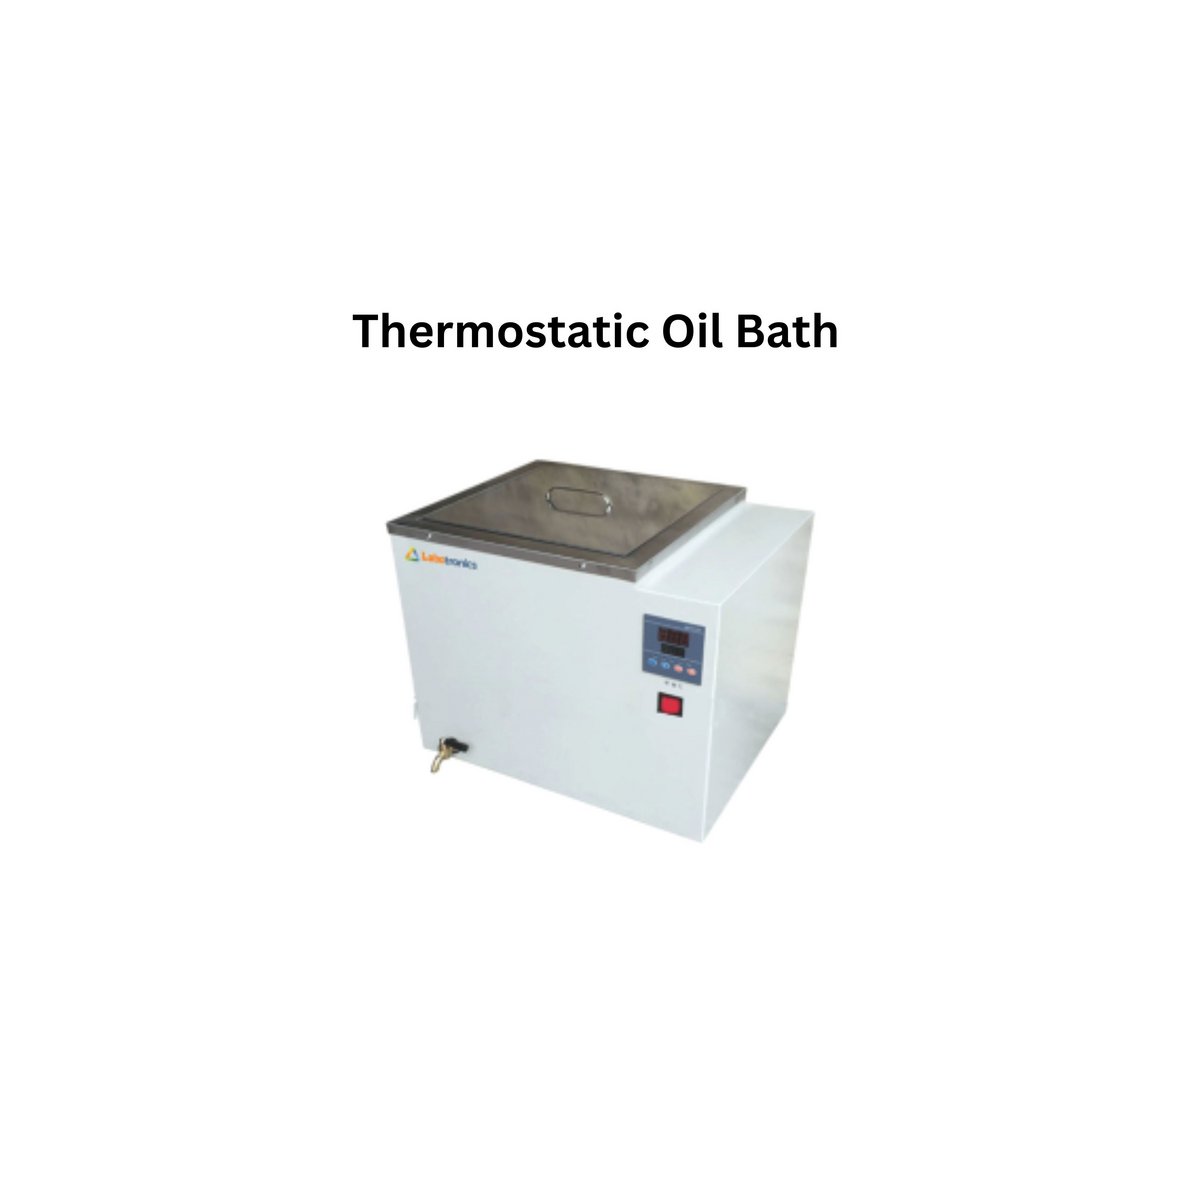 Thermostatic Oil Bath.jpg